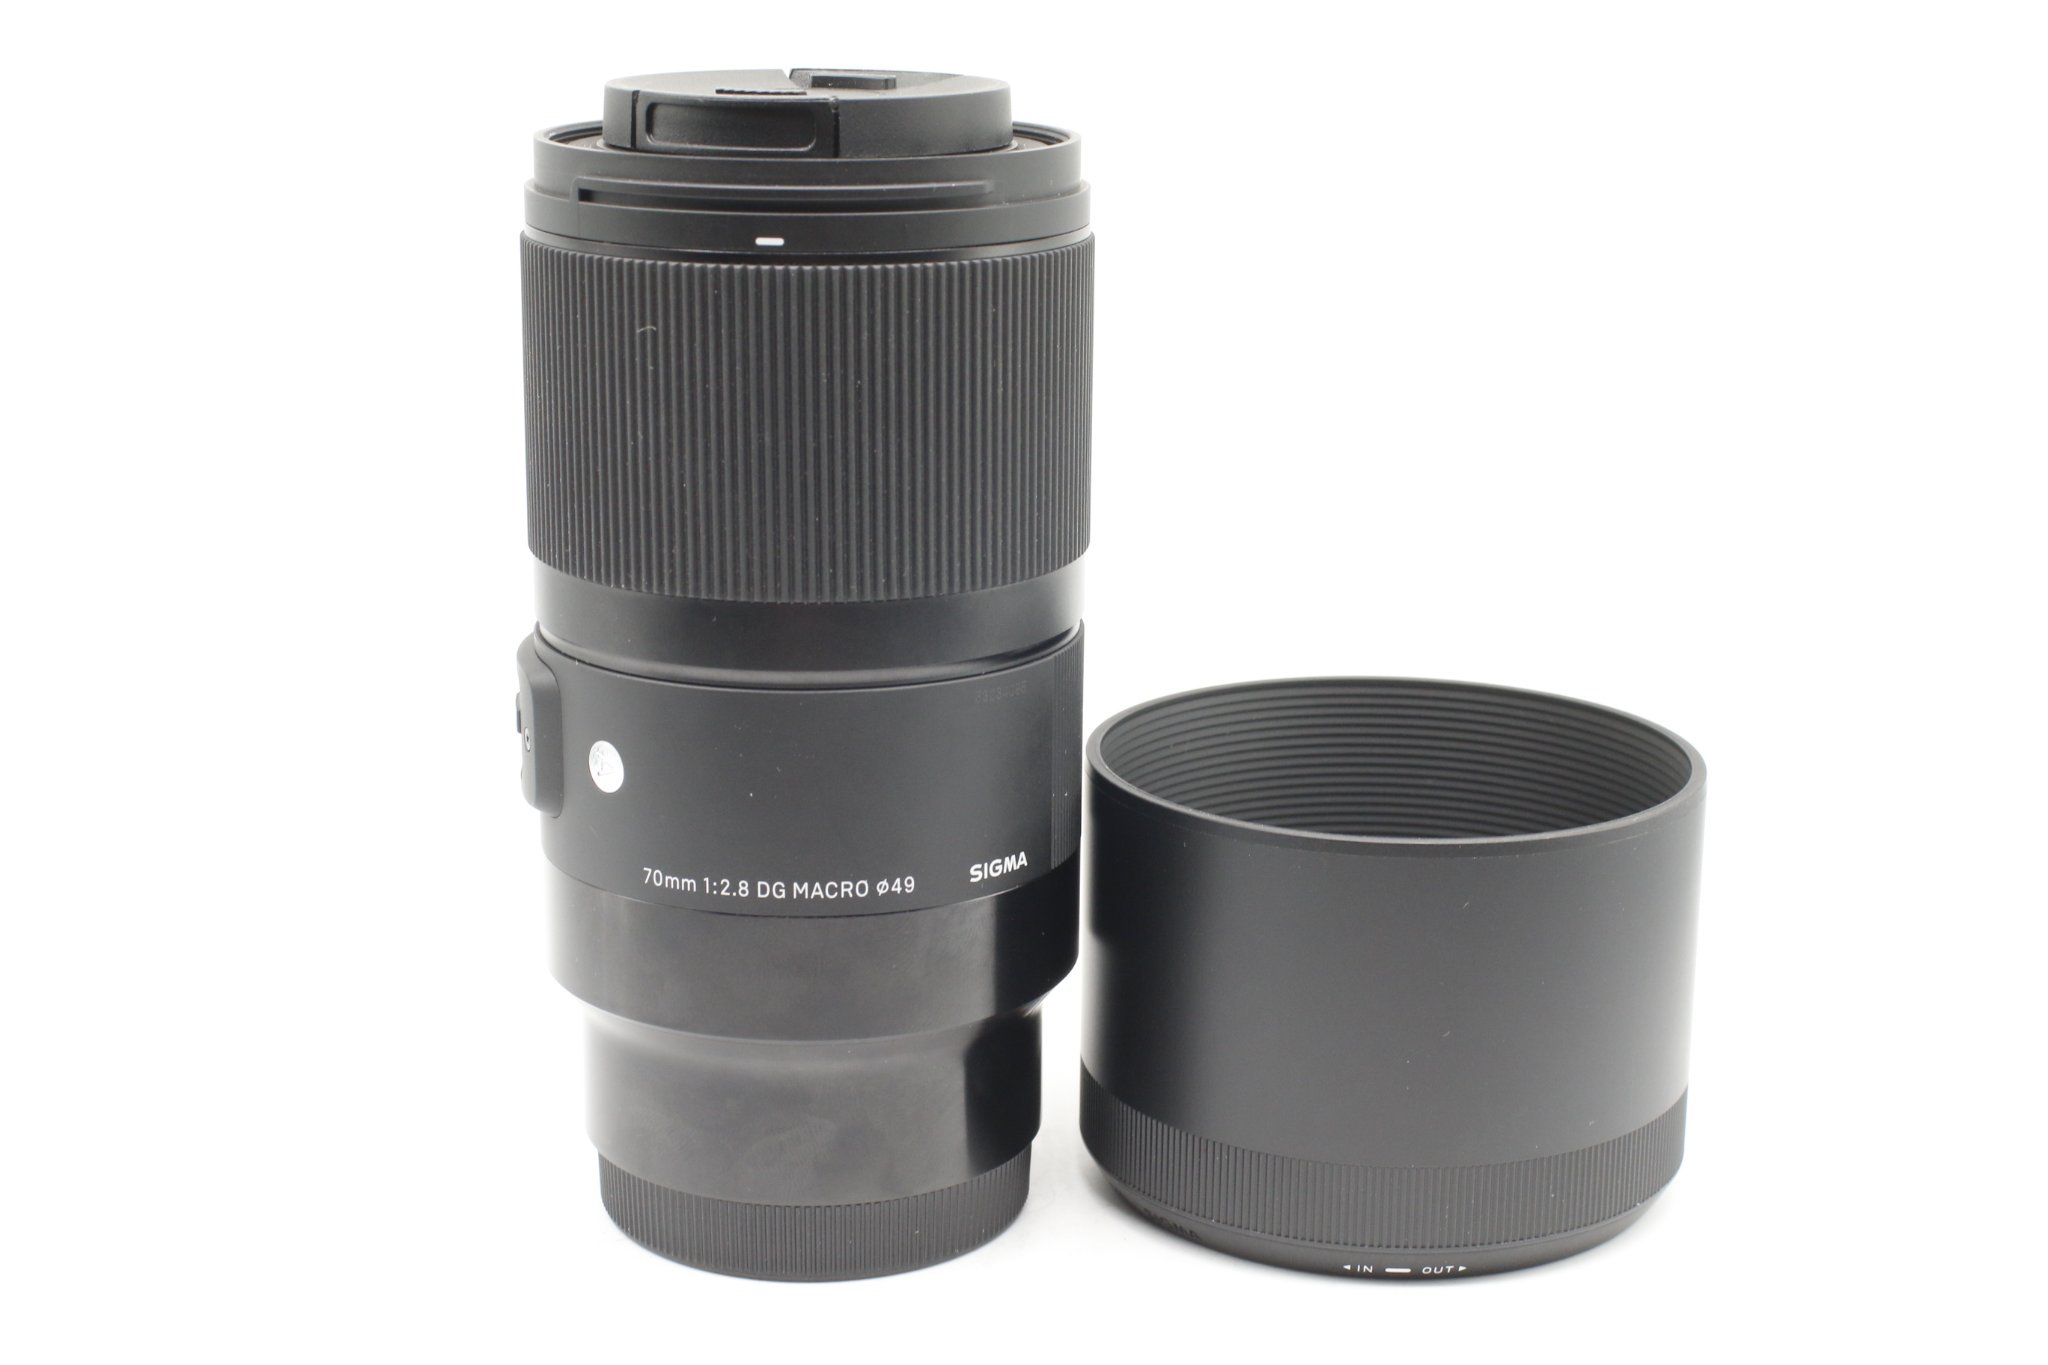 Ống kính Sigma 70mm F2.8DG MACRO Art For Sony E